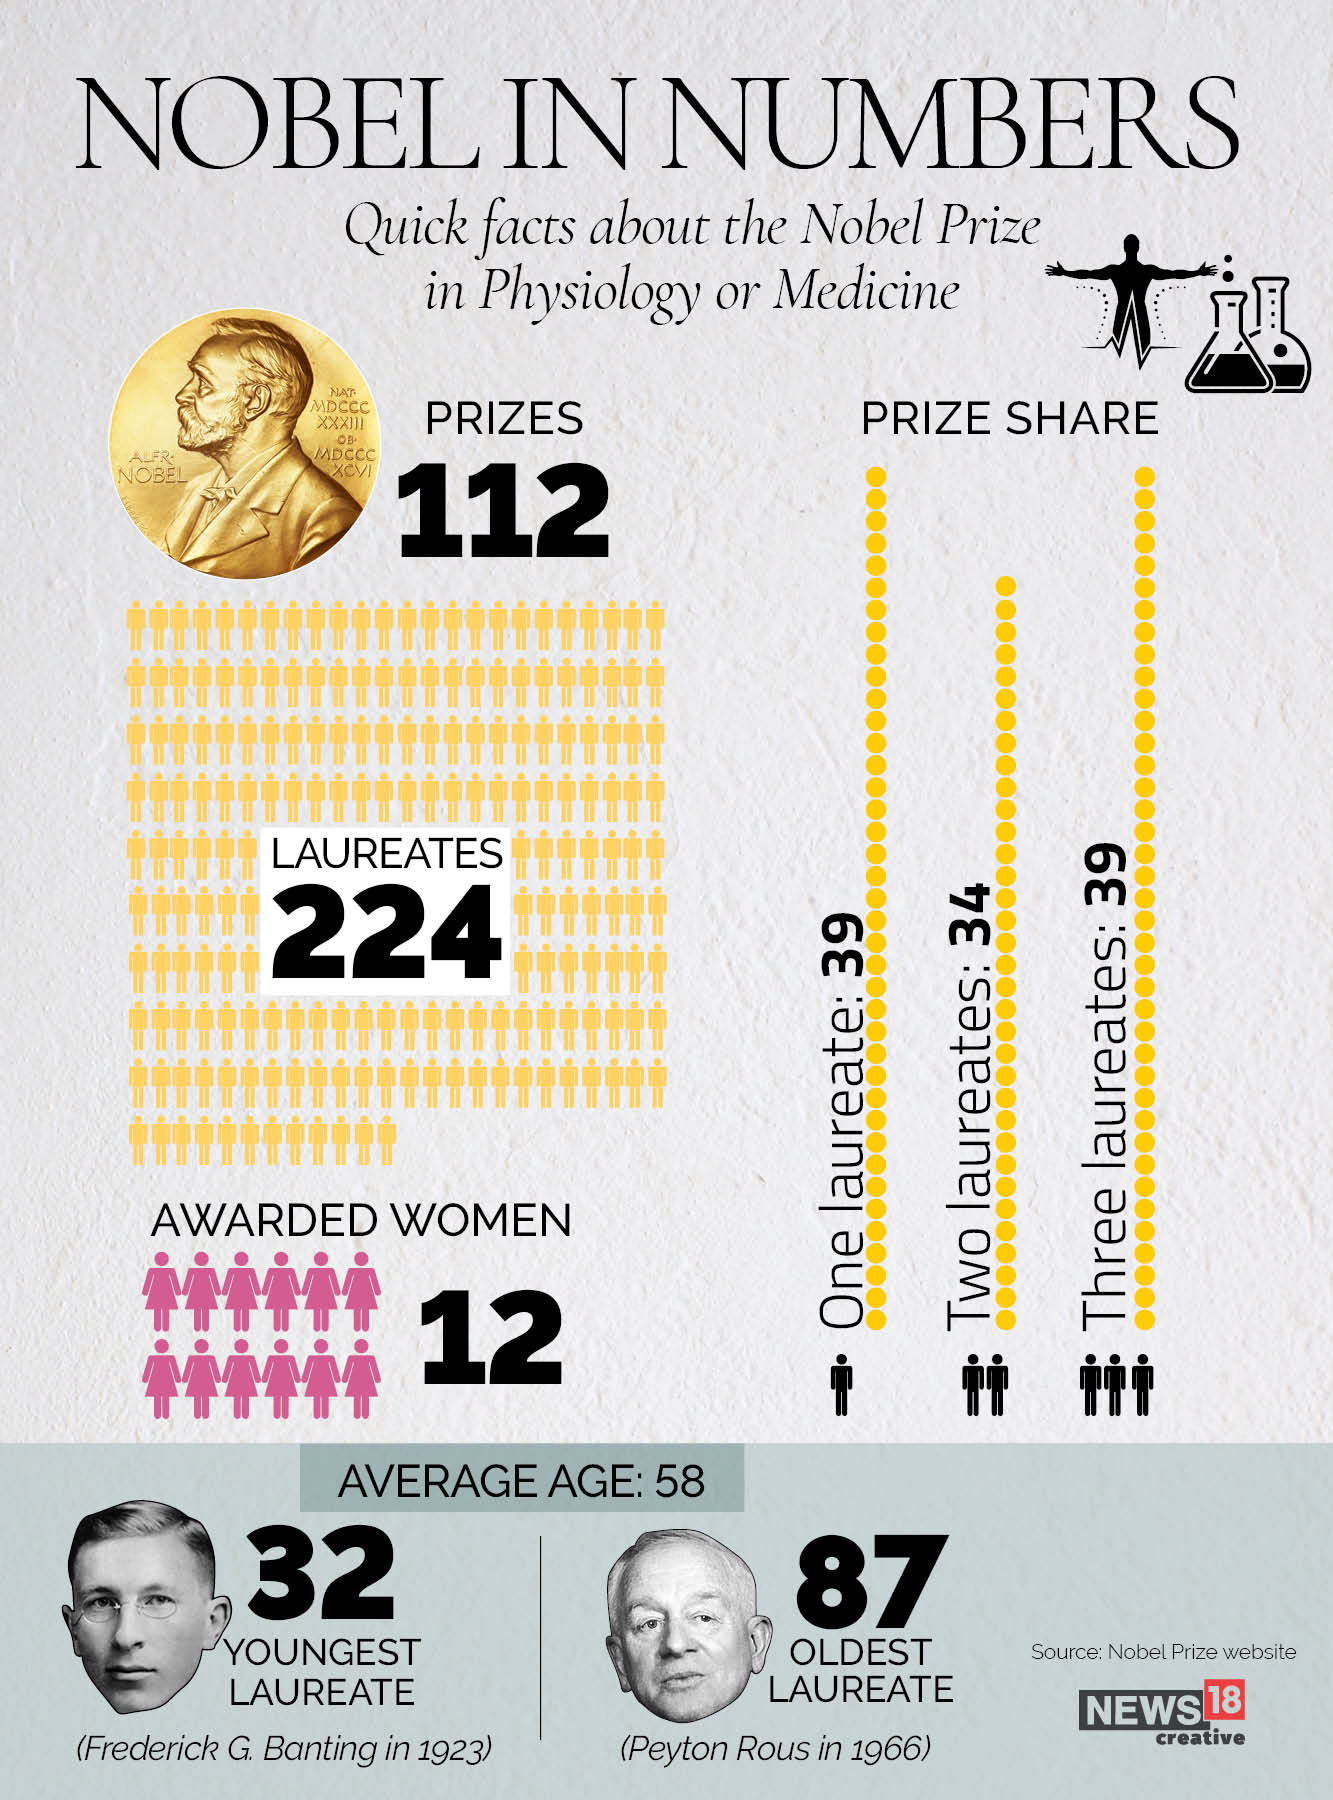 Meet the 2021 Nobel prize winner in Medicine